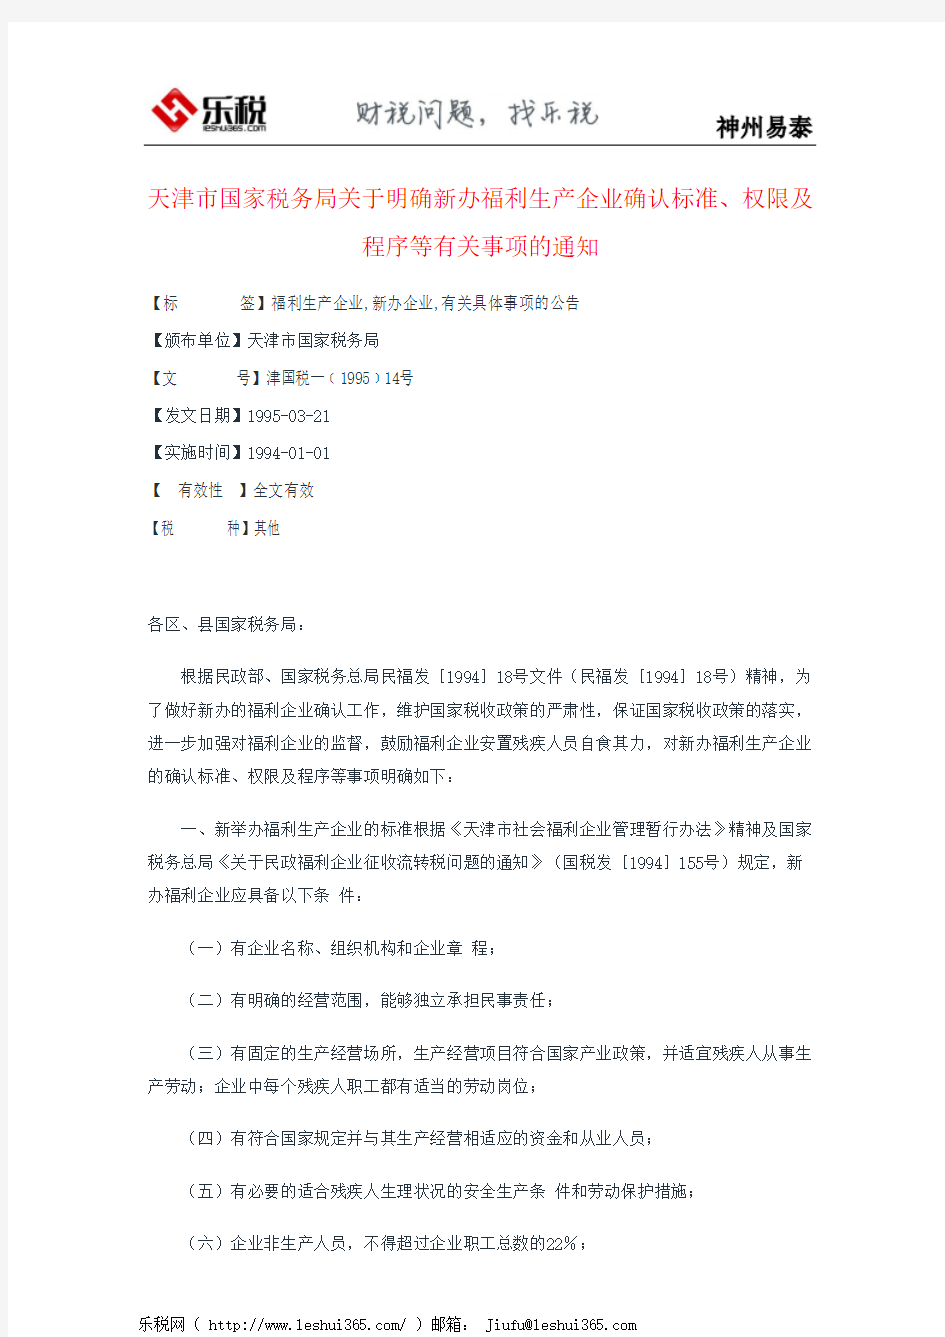 天津市国家税务局关于明确新办福利生产企业确认标准、权限及程序